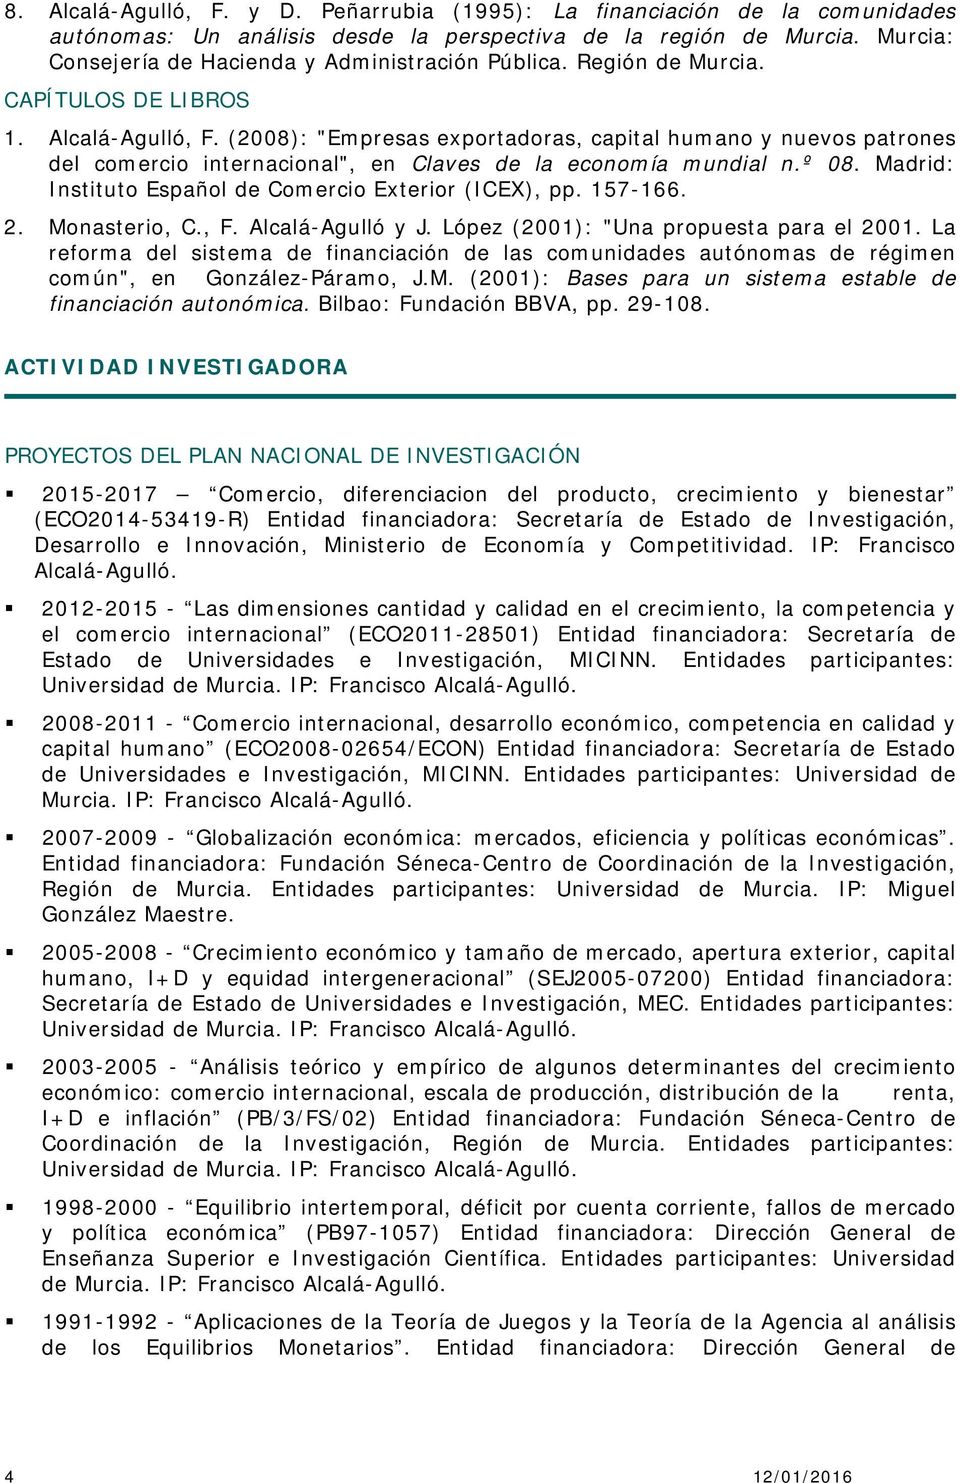 (2008): "Empresas exportadoras, capital humano y nuevos patrones del comercio internacional", en Claves de la economía mundial n.º 08. Madrid: Instituto Español de Comercio Exterior (ICEX), pp.